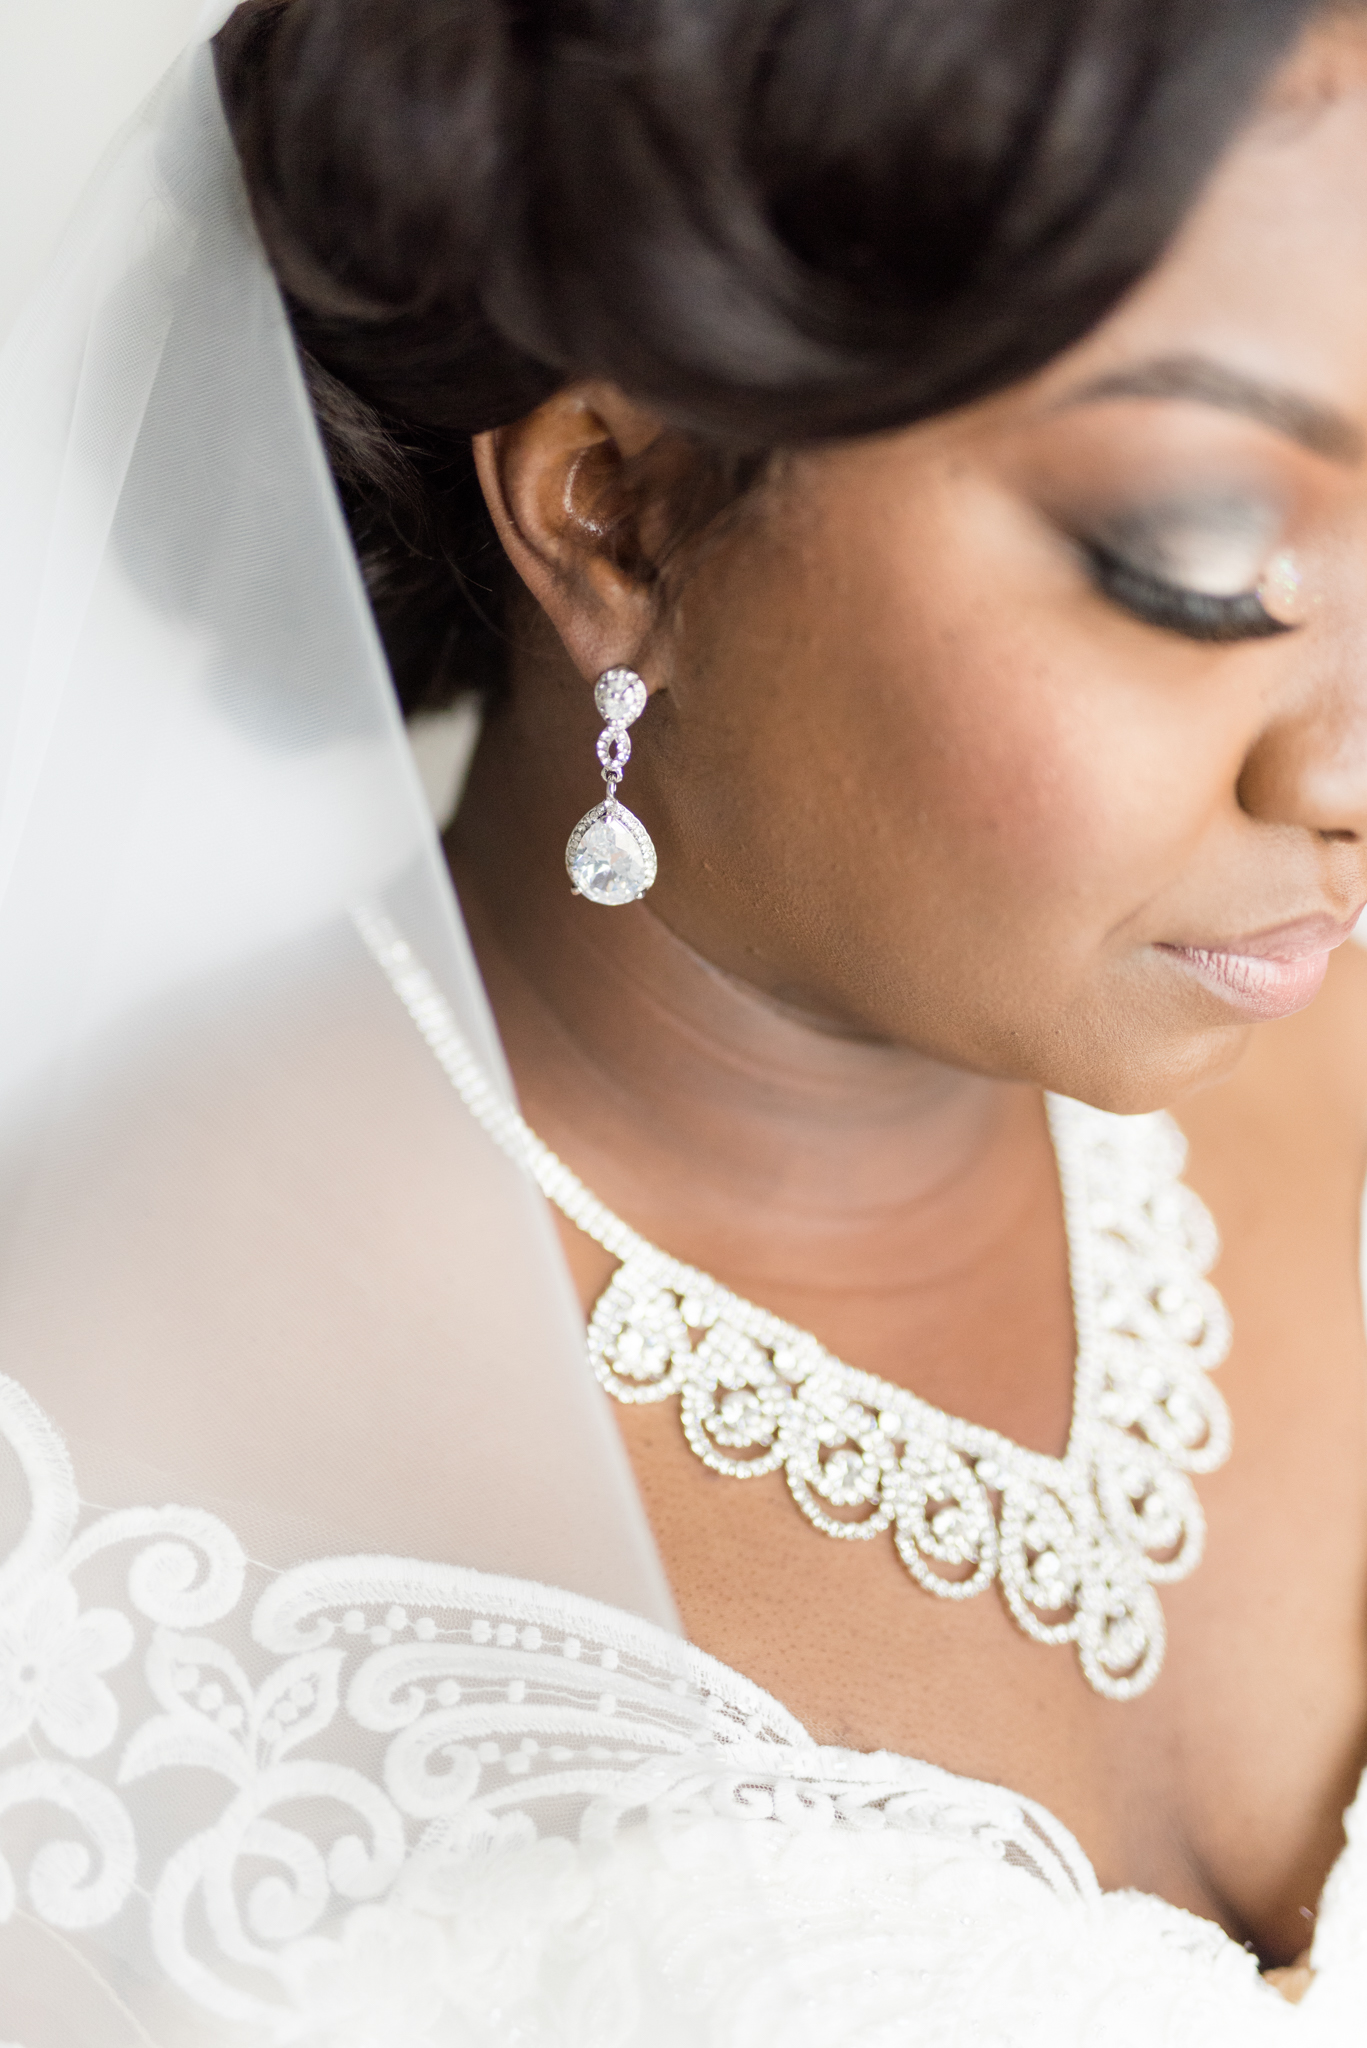 Closeup of bridal earrings.